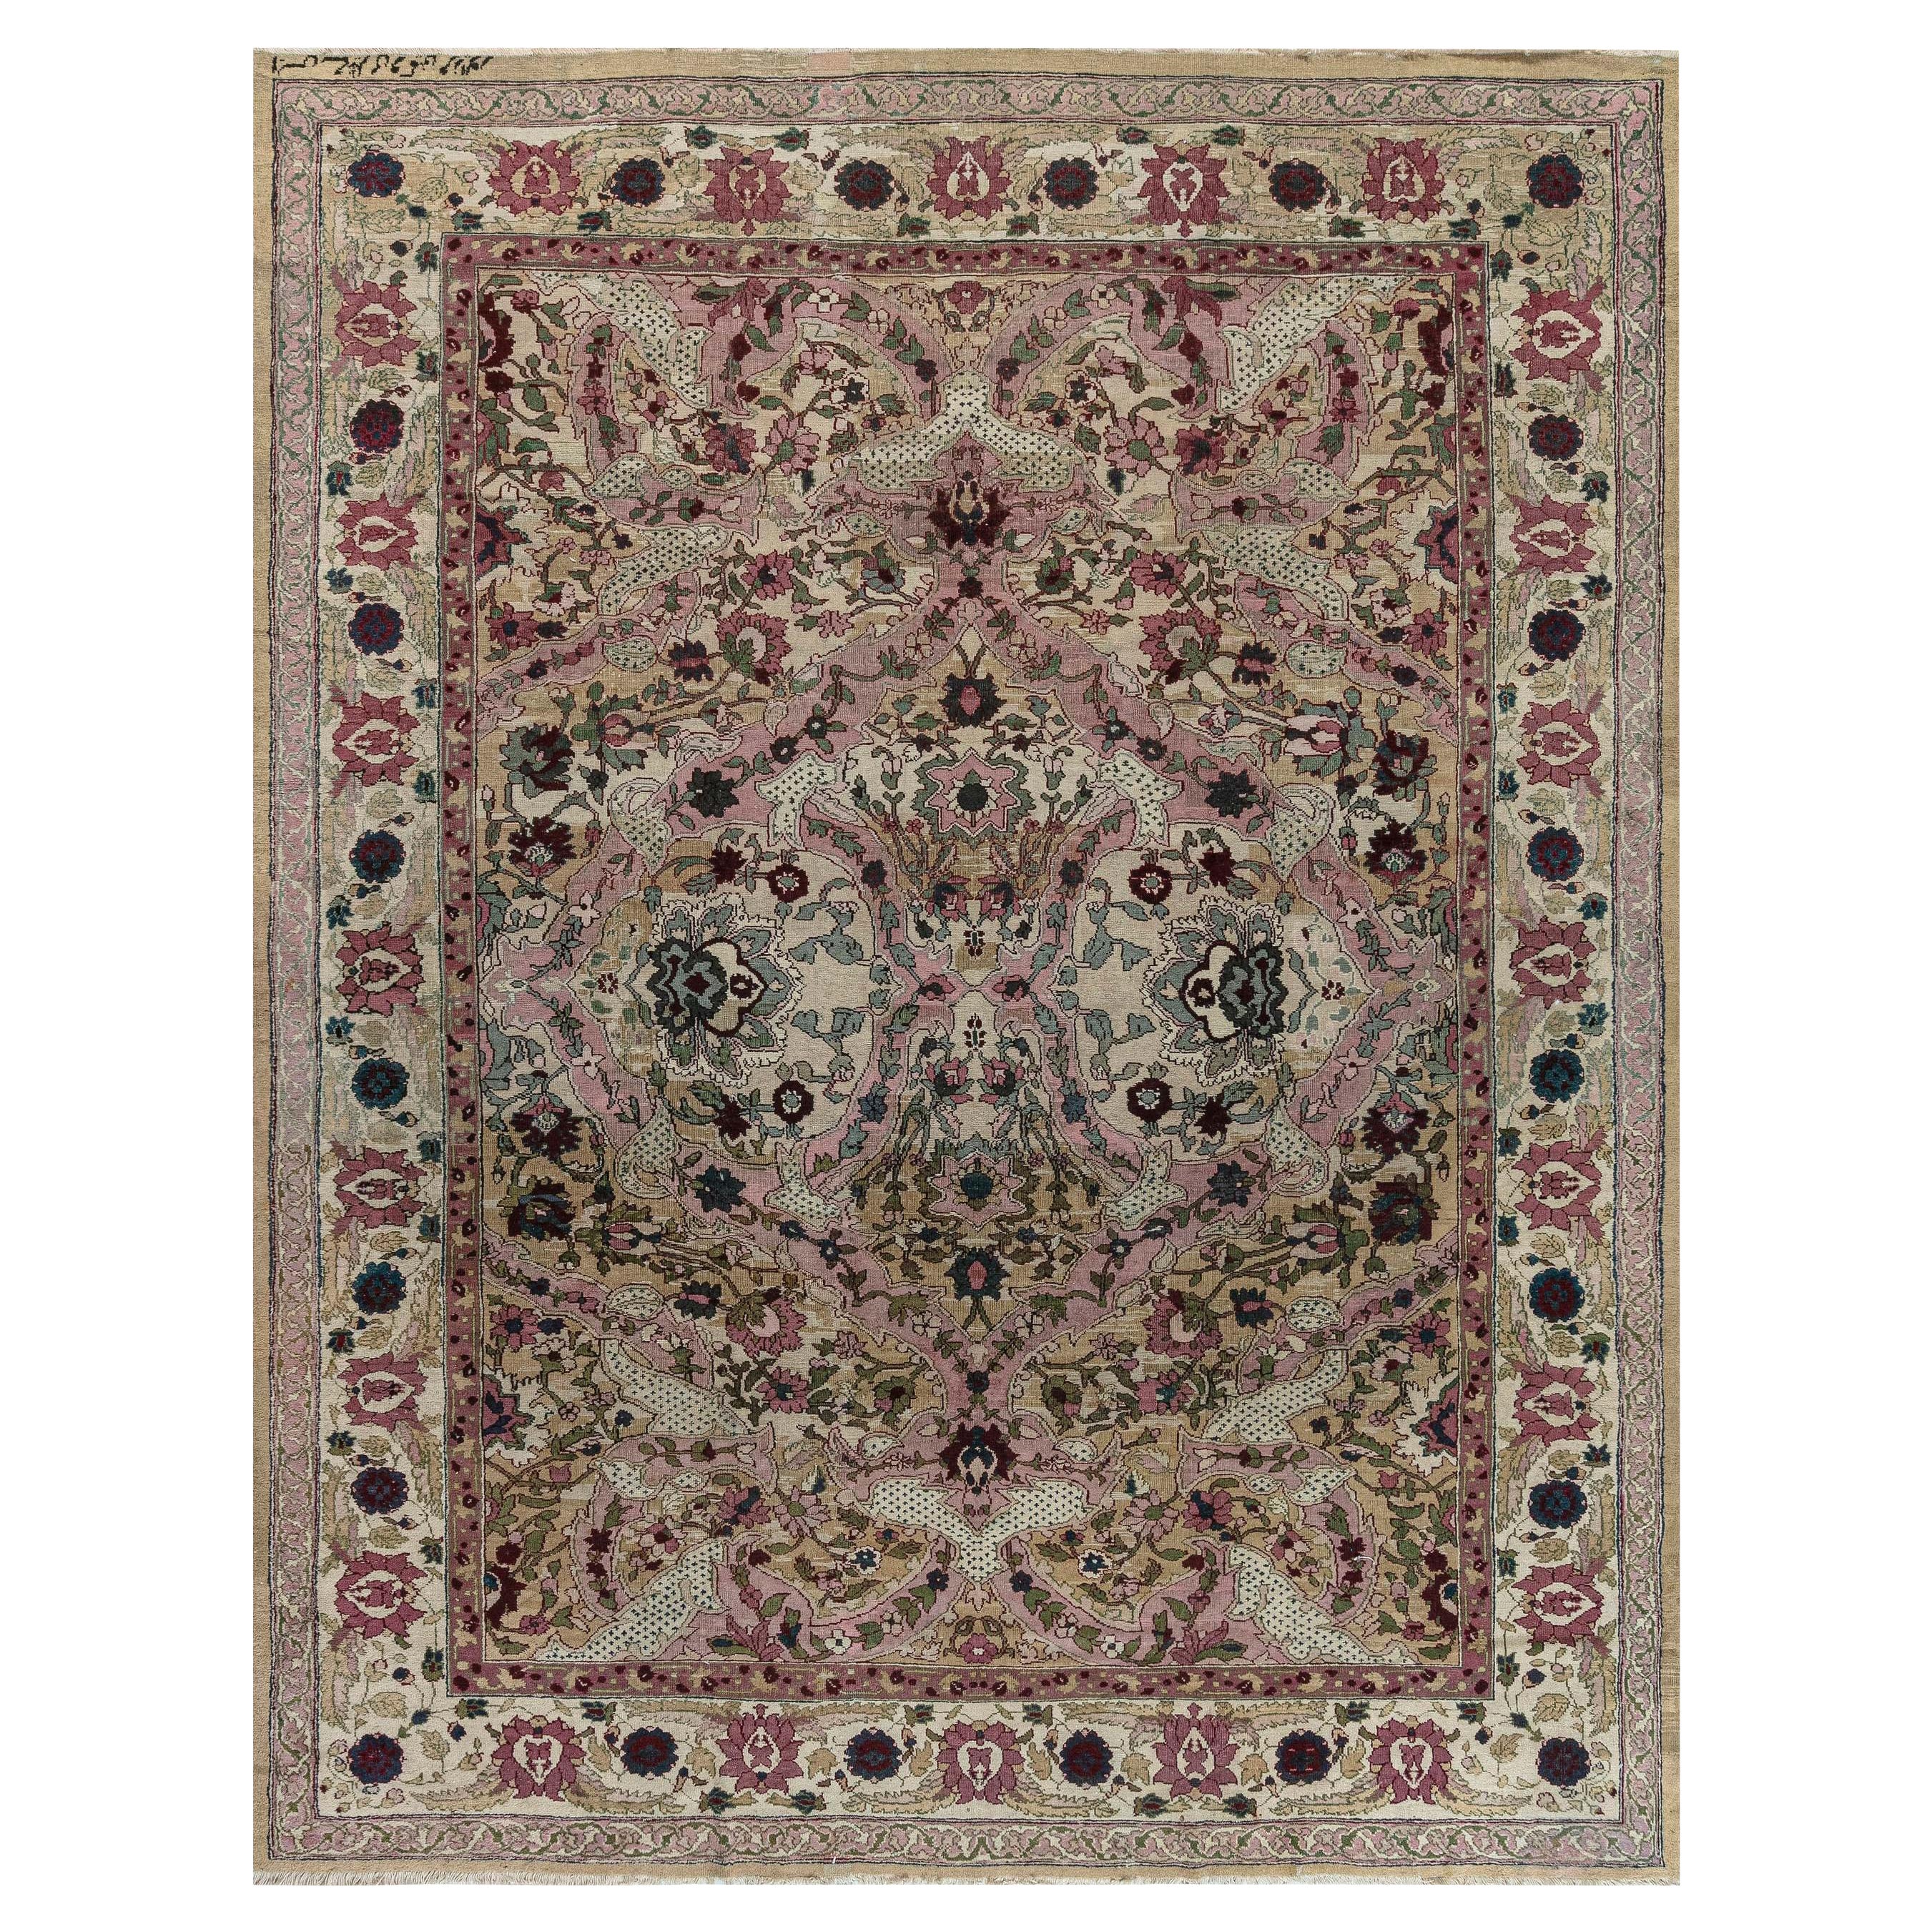 Authentischer indischer Botanischer Teppich aus Amritsar aus dem 19.